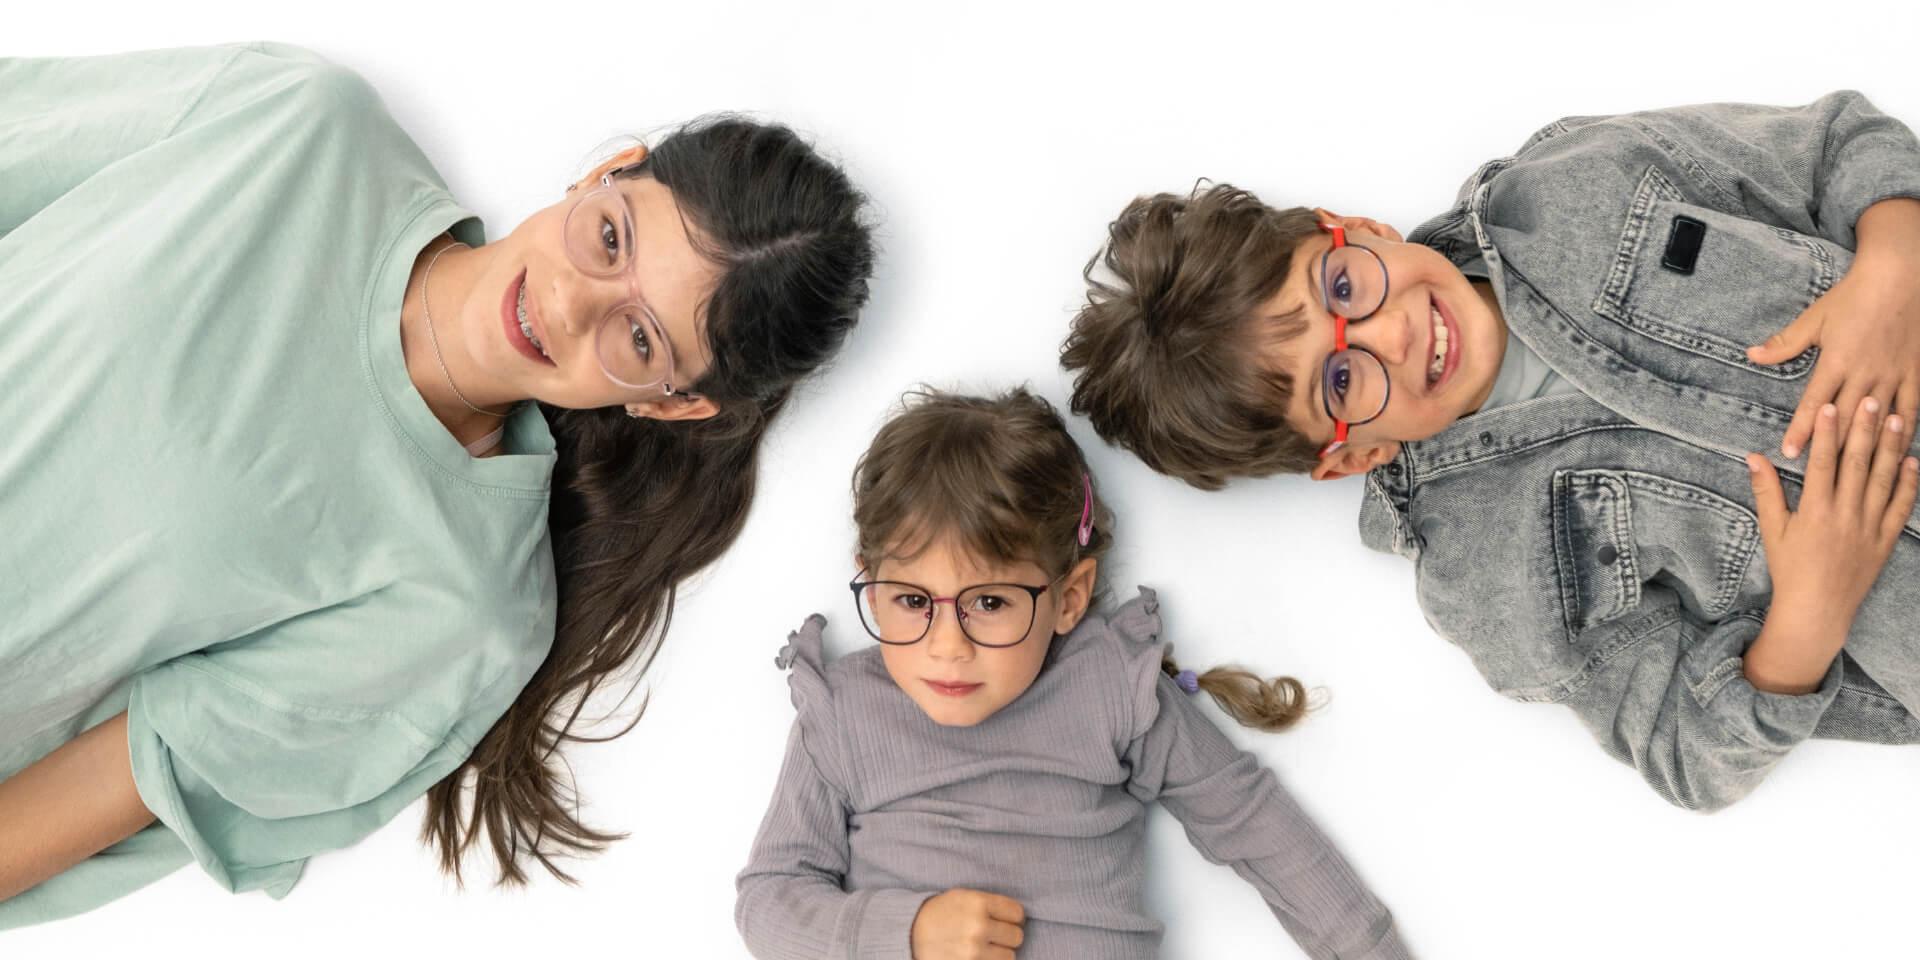 Un adolescent et deux jeunes enfants portant des verres ZEISS Myopia Management sont couchés au sol.